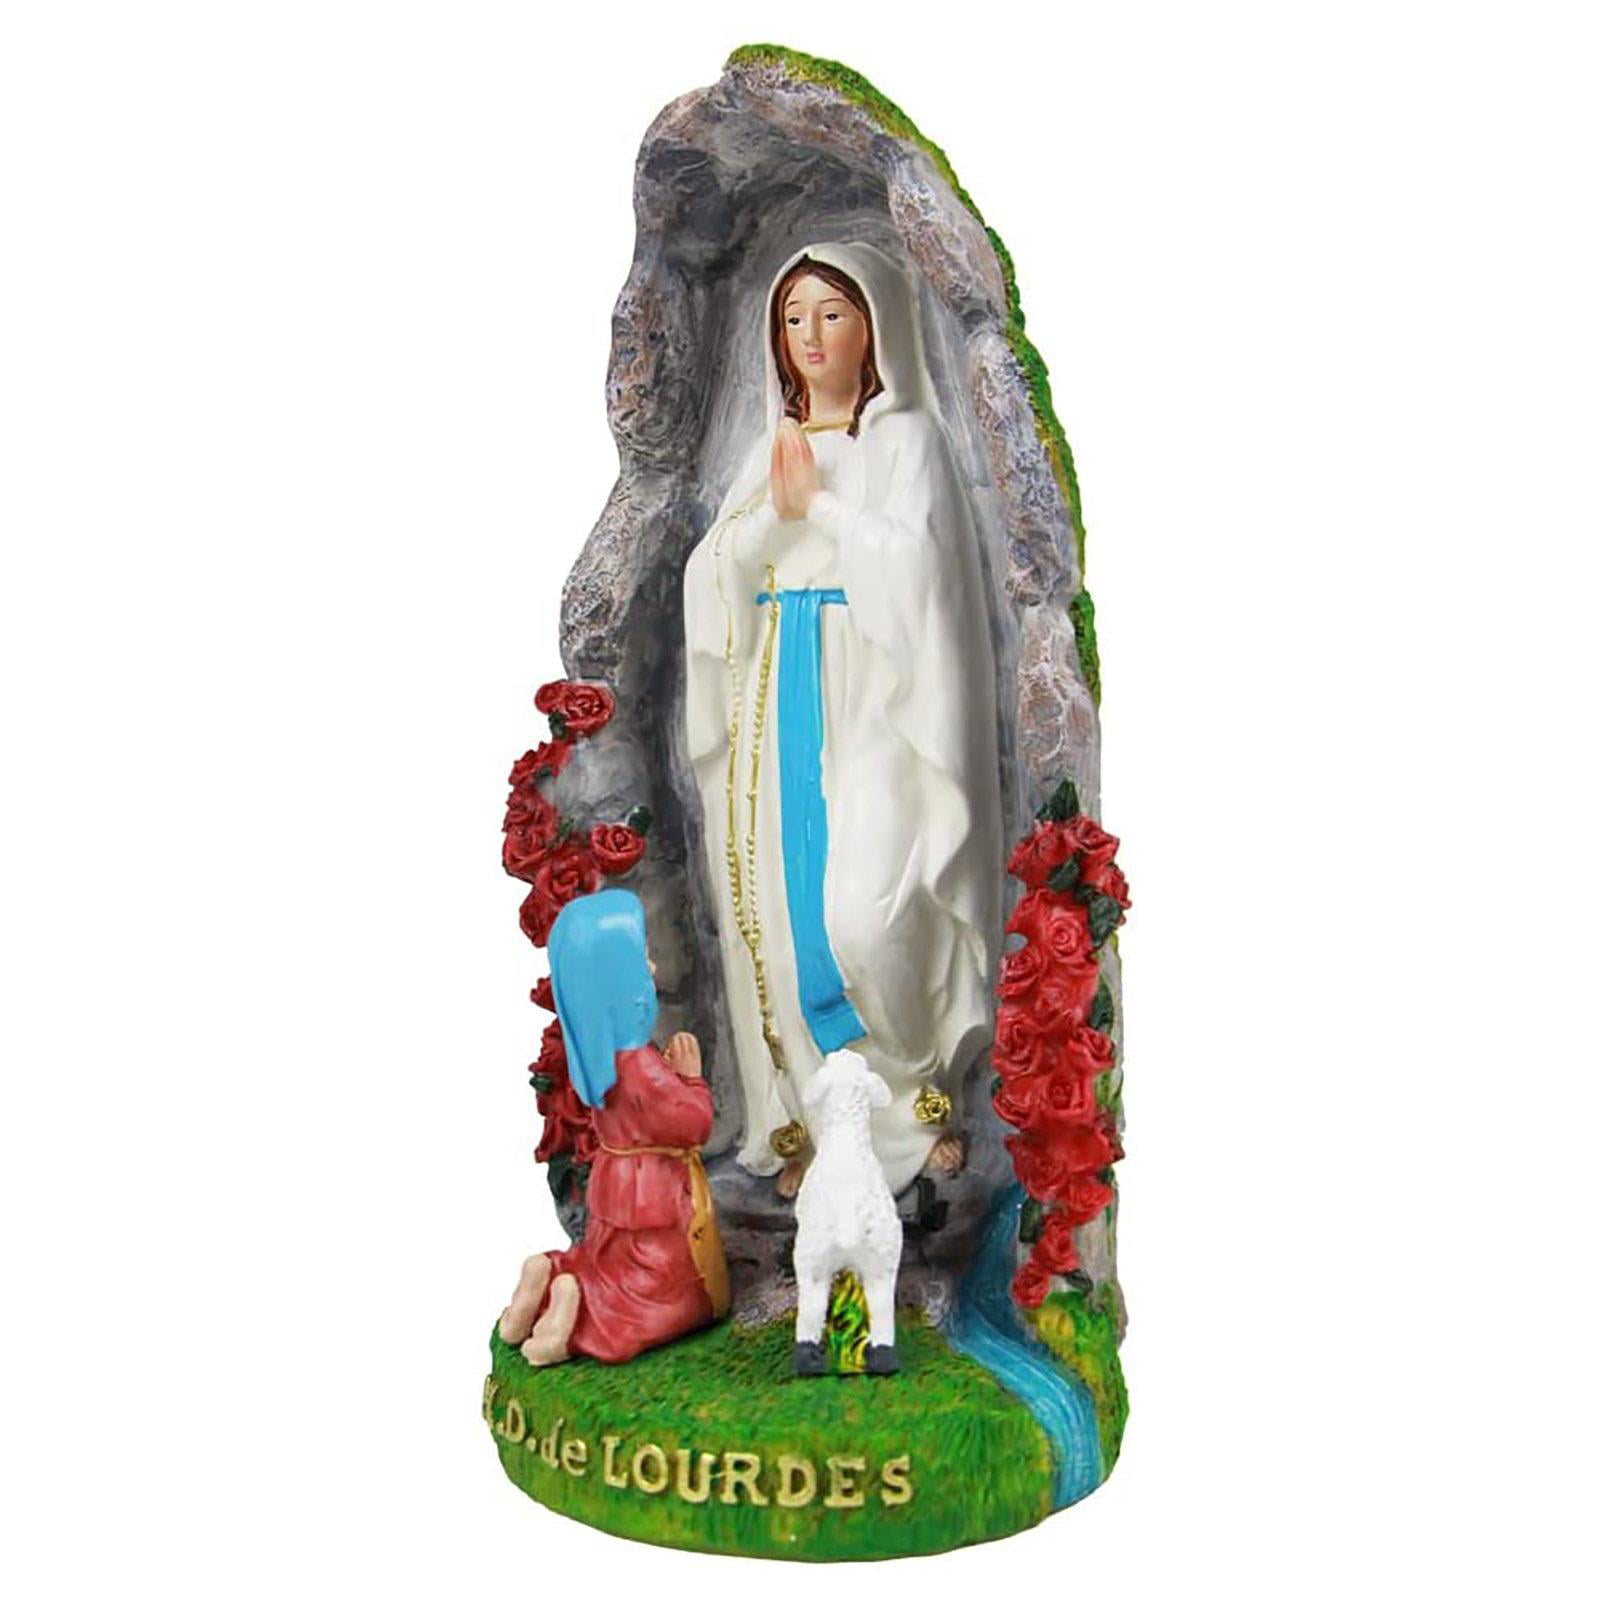 European Exquisite Jesus Statue Figurine Desktop Religious Sculpture Gift 